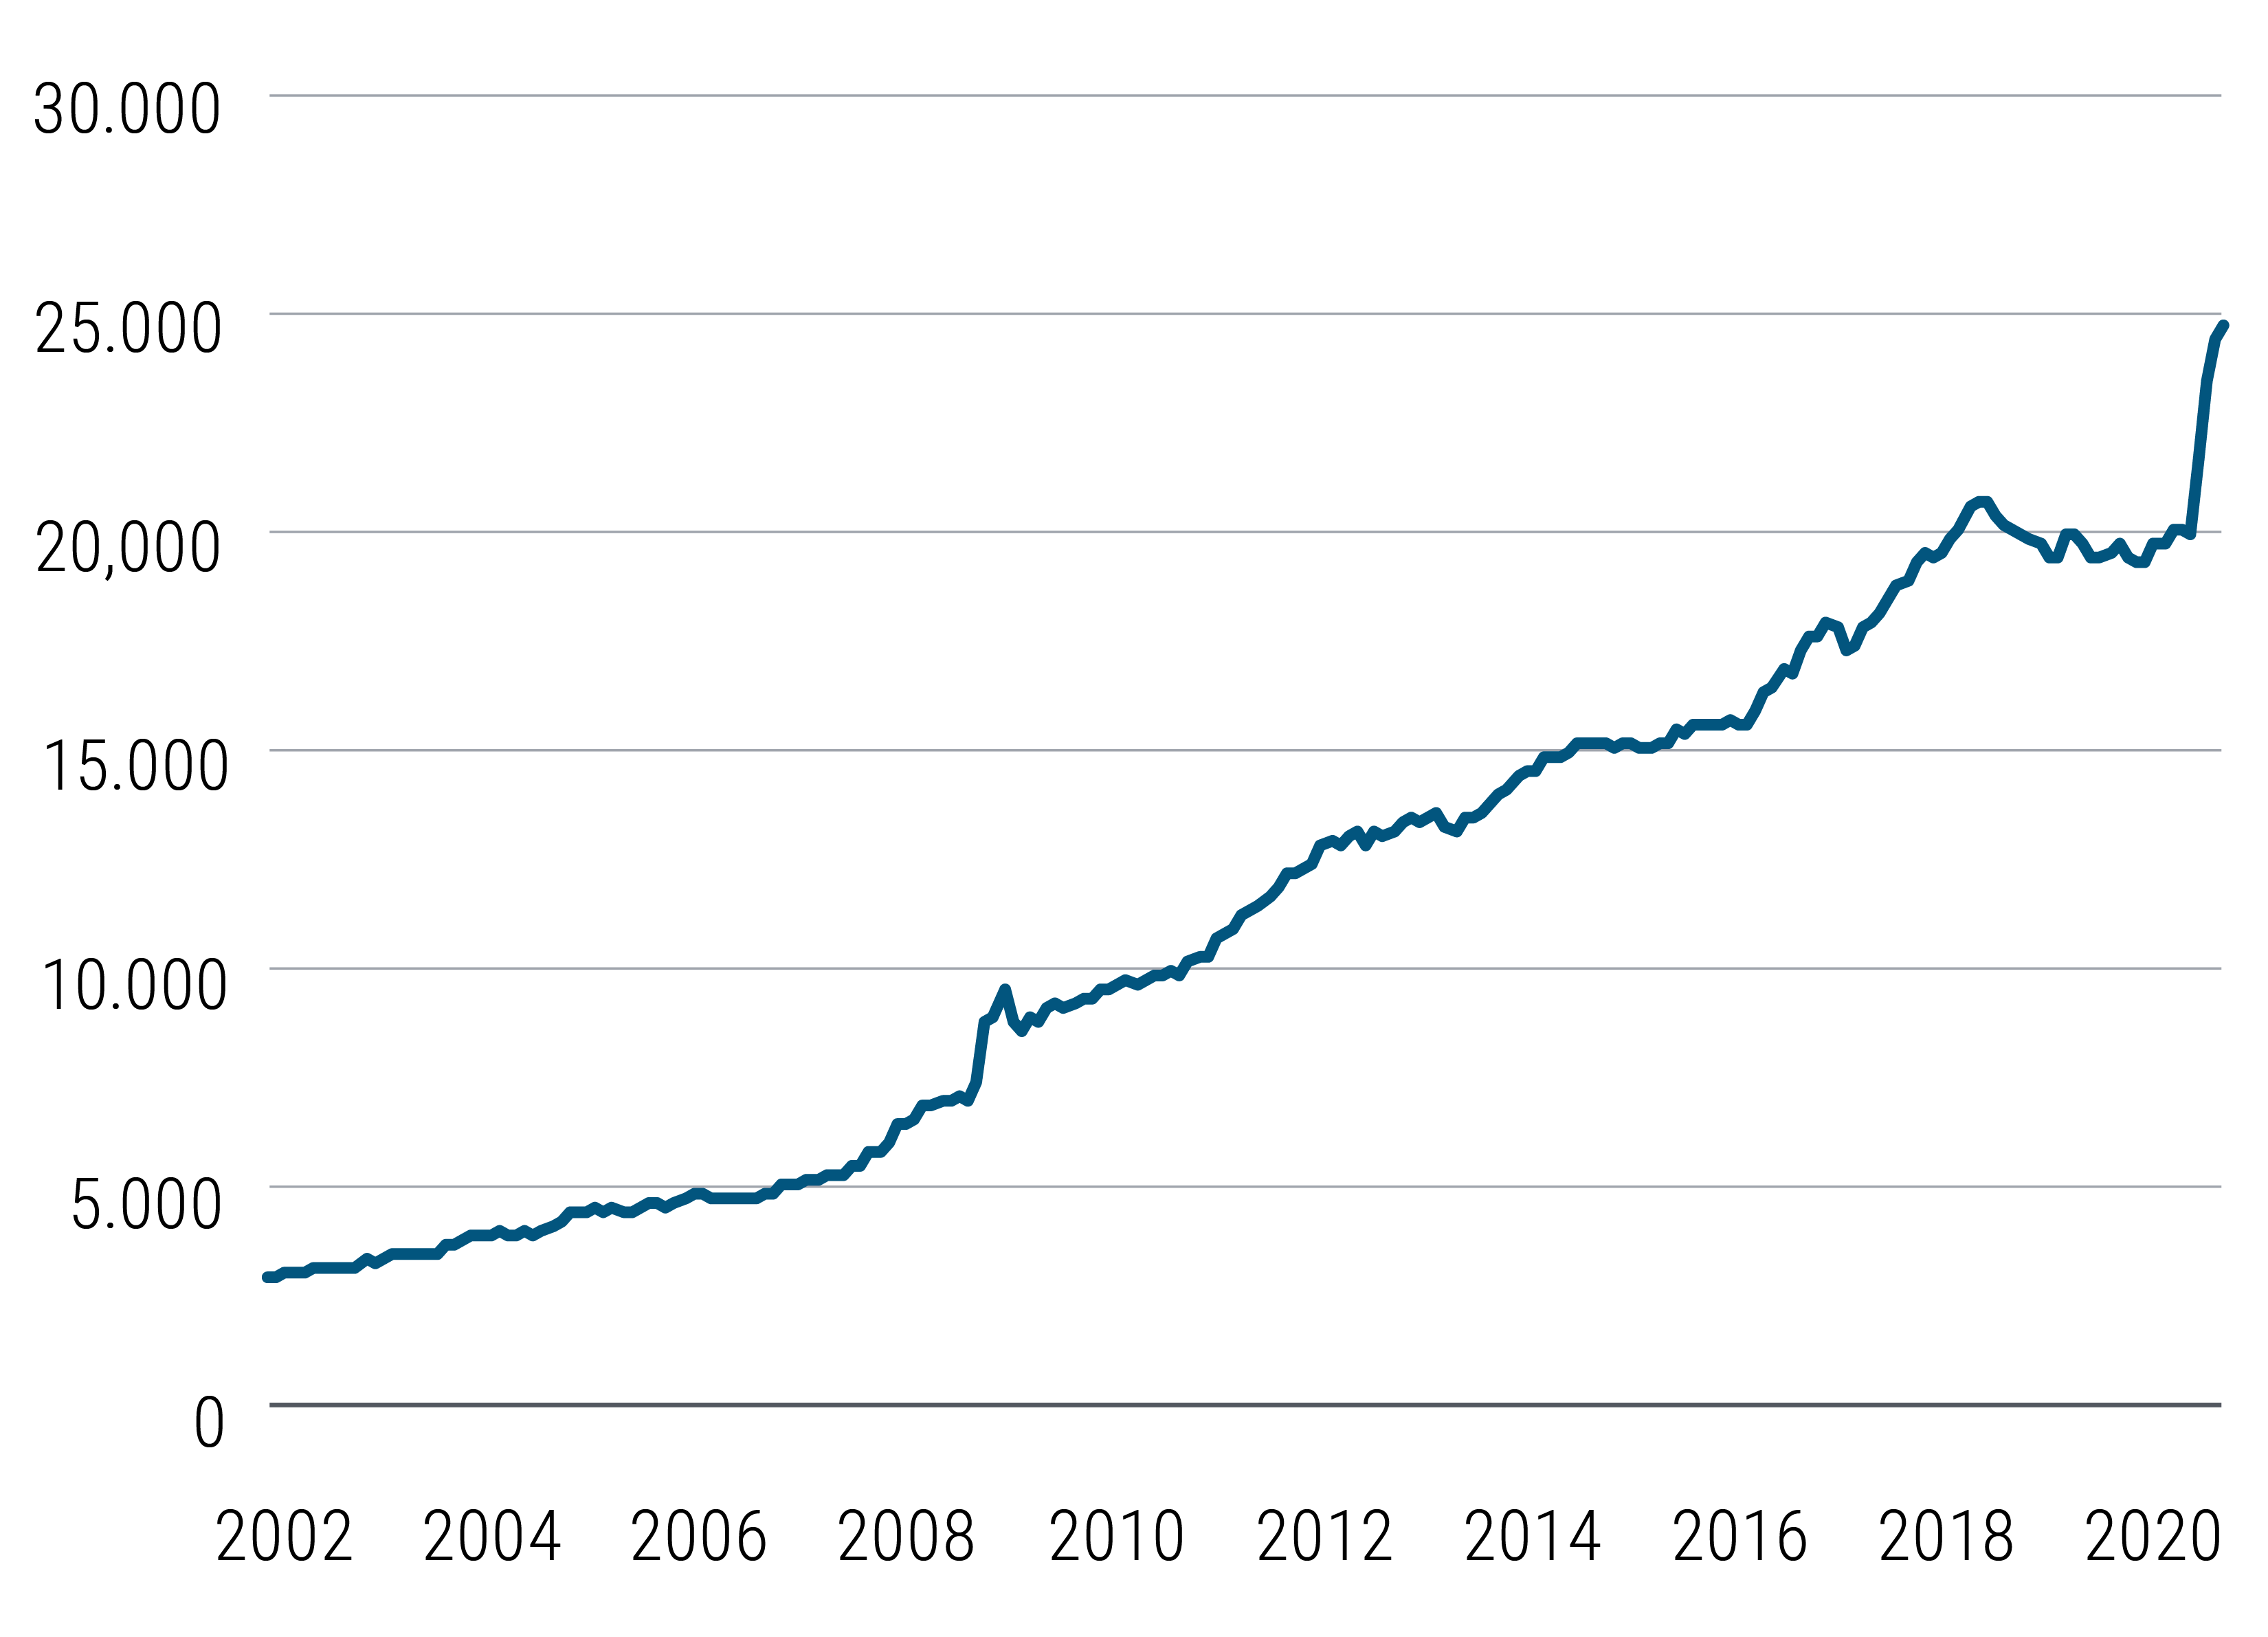 La figura 1 mostra l'espansione dei bilanci complessivi delle quattro principali banche centrali a livello mondiale (Federal Reserve, Banca Centrale Europea, Banca Centrale del Giappone e Banca Centrale Cinese) da meno di 5.000 miliardi di Dollari nel 2002 agli attuali circa 25.000 miliardi di Dollari, con un forte incremento quest'anno a seguito delle misure di sostegno senza precedenti adottate. Dati Bloomberg al 18 giugno 2020.